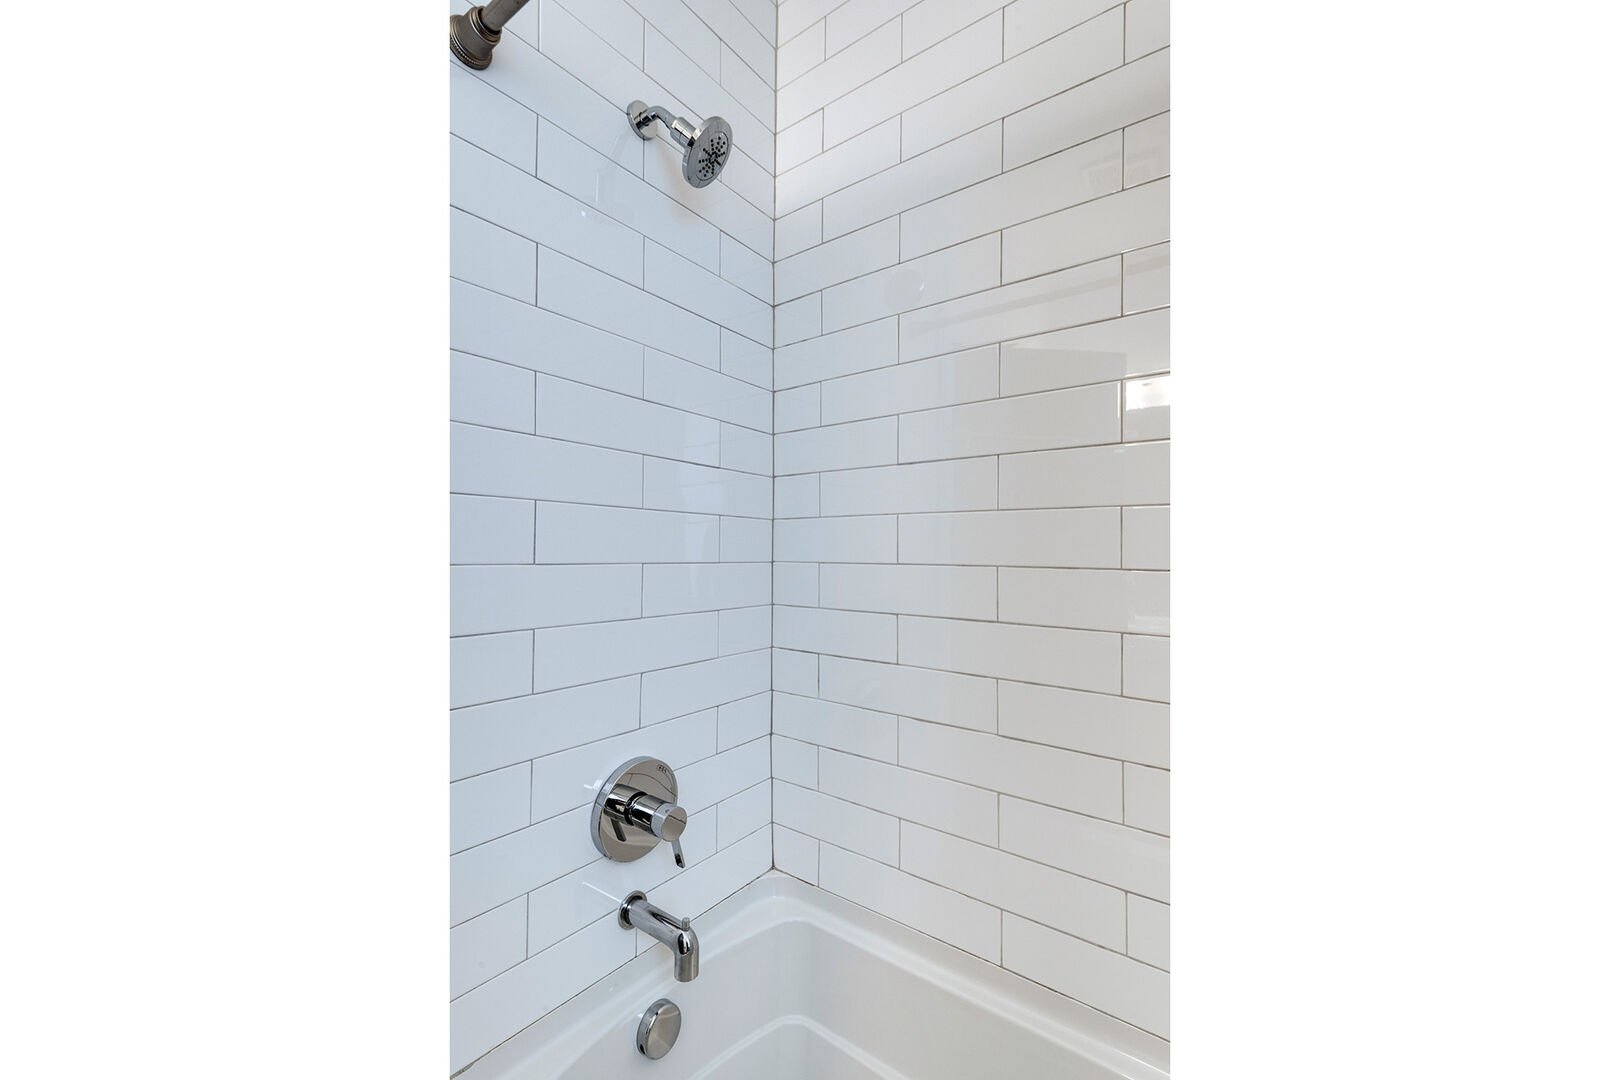 2nd Bedroom en-suite bathroom, shower/tub combo